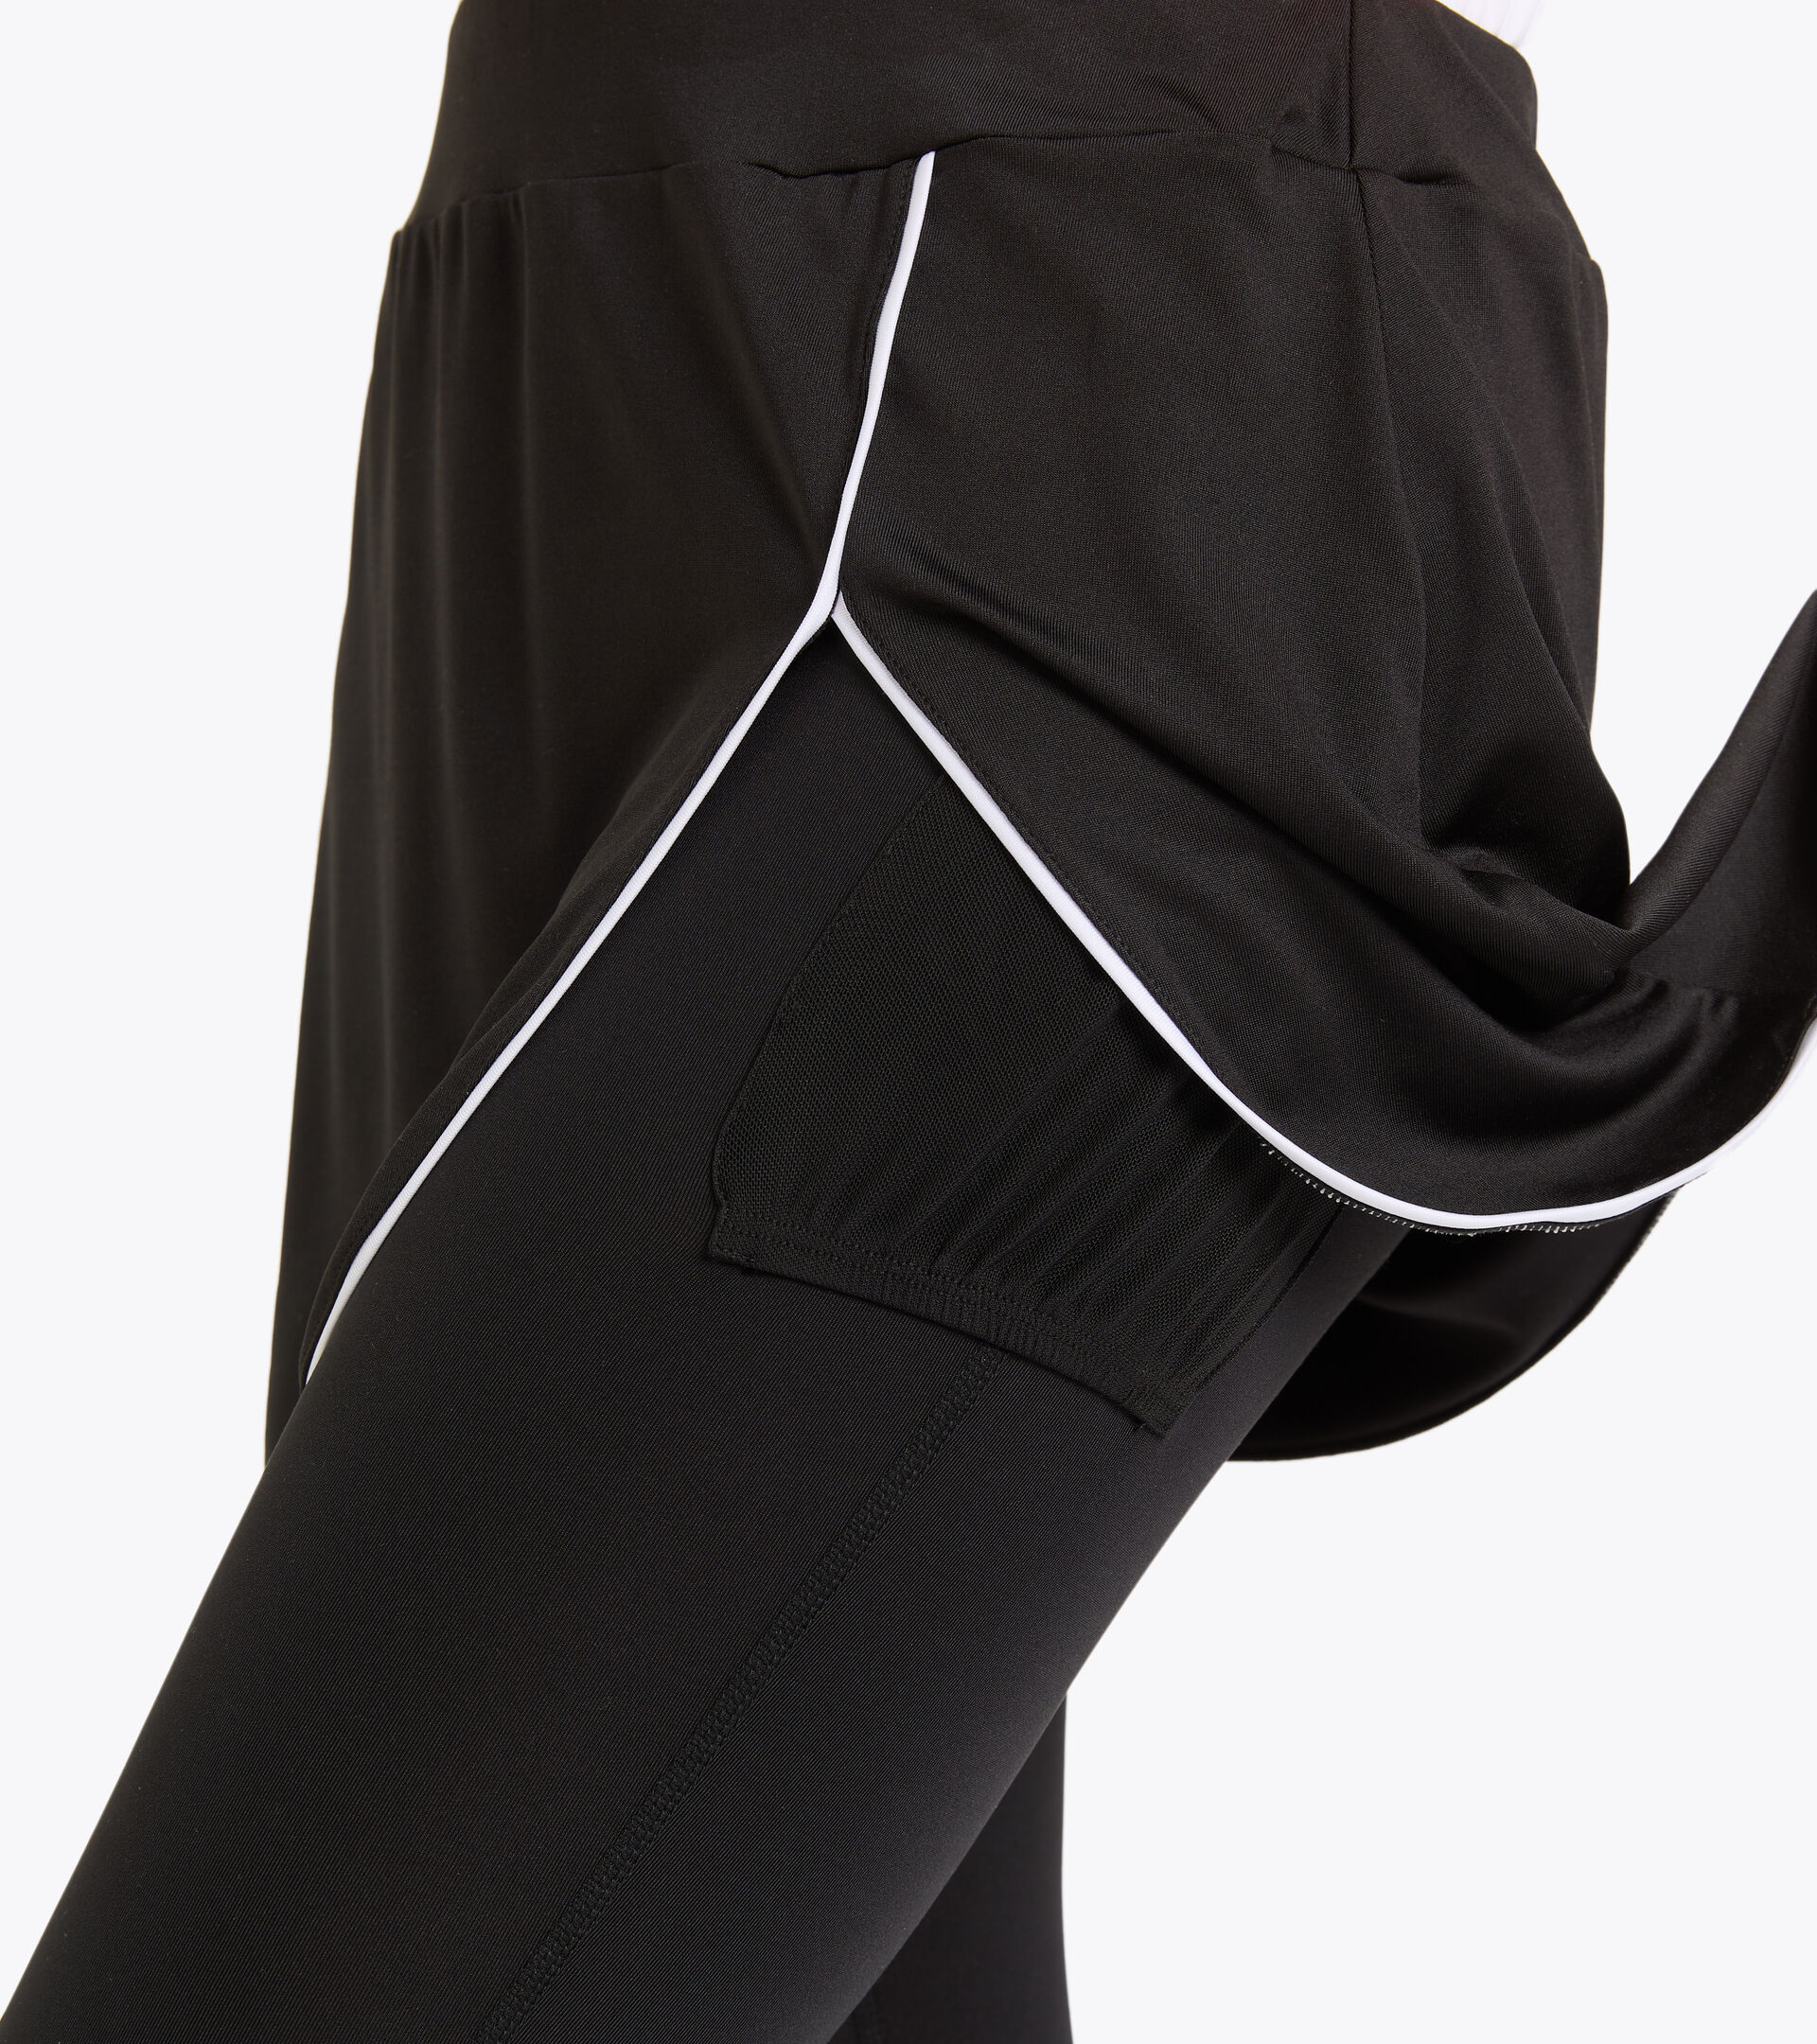 Polyester tennis skirt - Women L. POWER SKIRT BLACK - Diadora